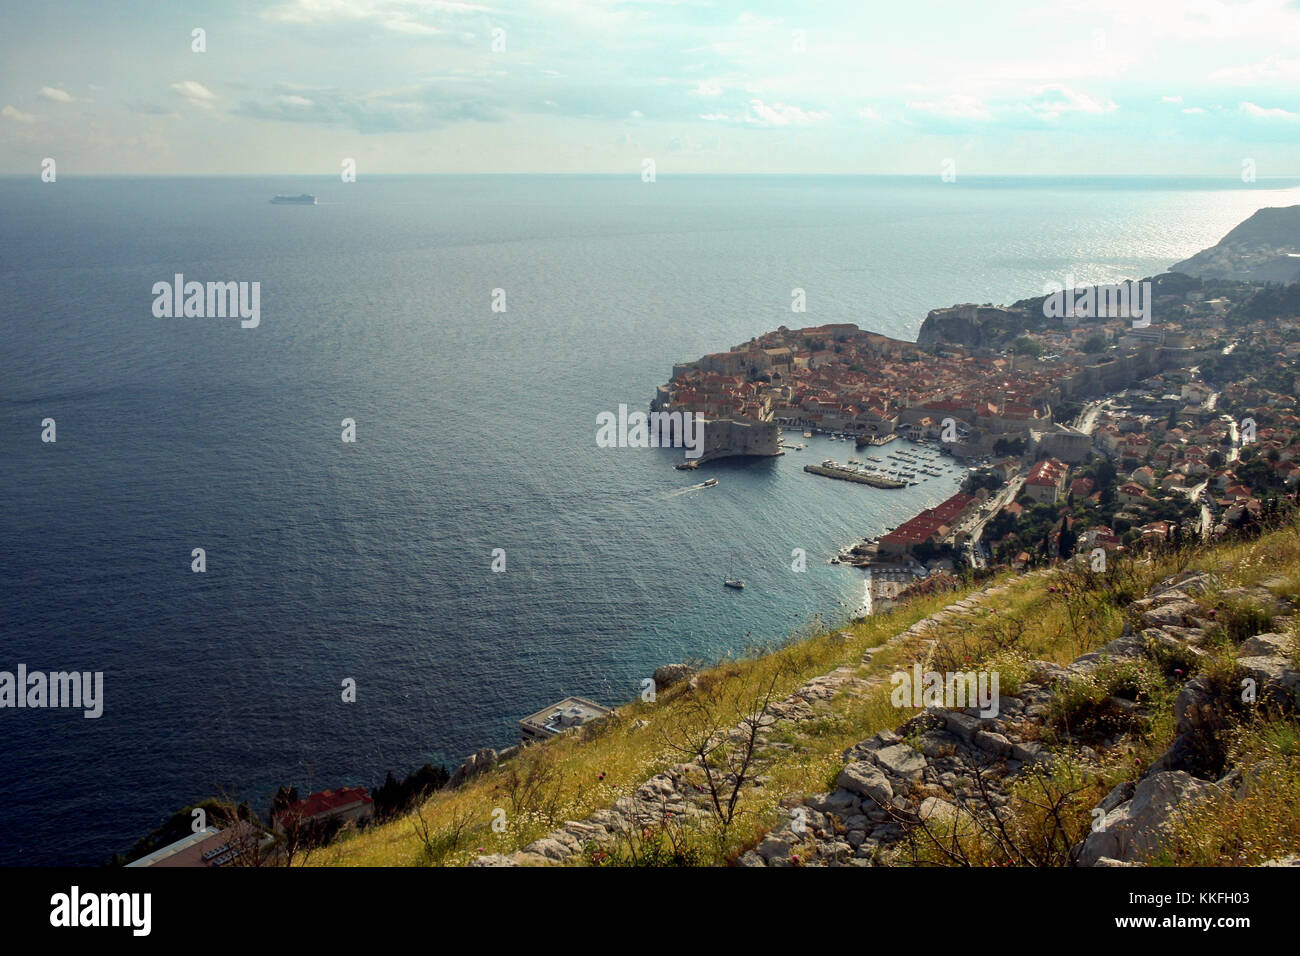 La città vecchia di Dubrovnik, Croazia, visto da sopra con il mare Adriatico in background. Il posto è uno dei maggiori hotspot per turismo croato Foto Stock